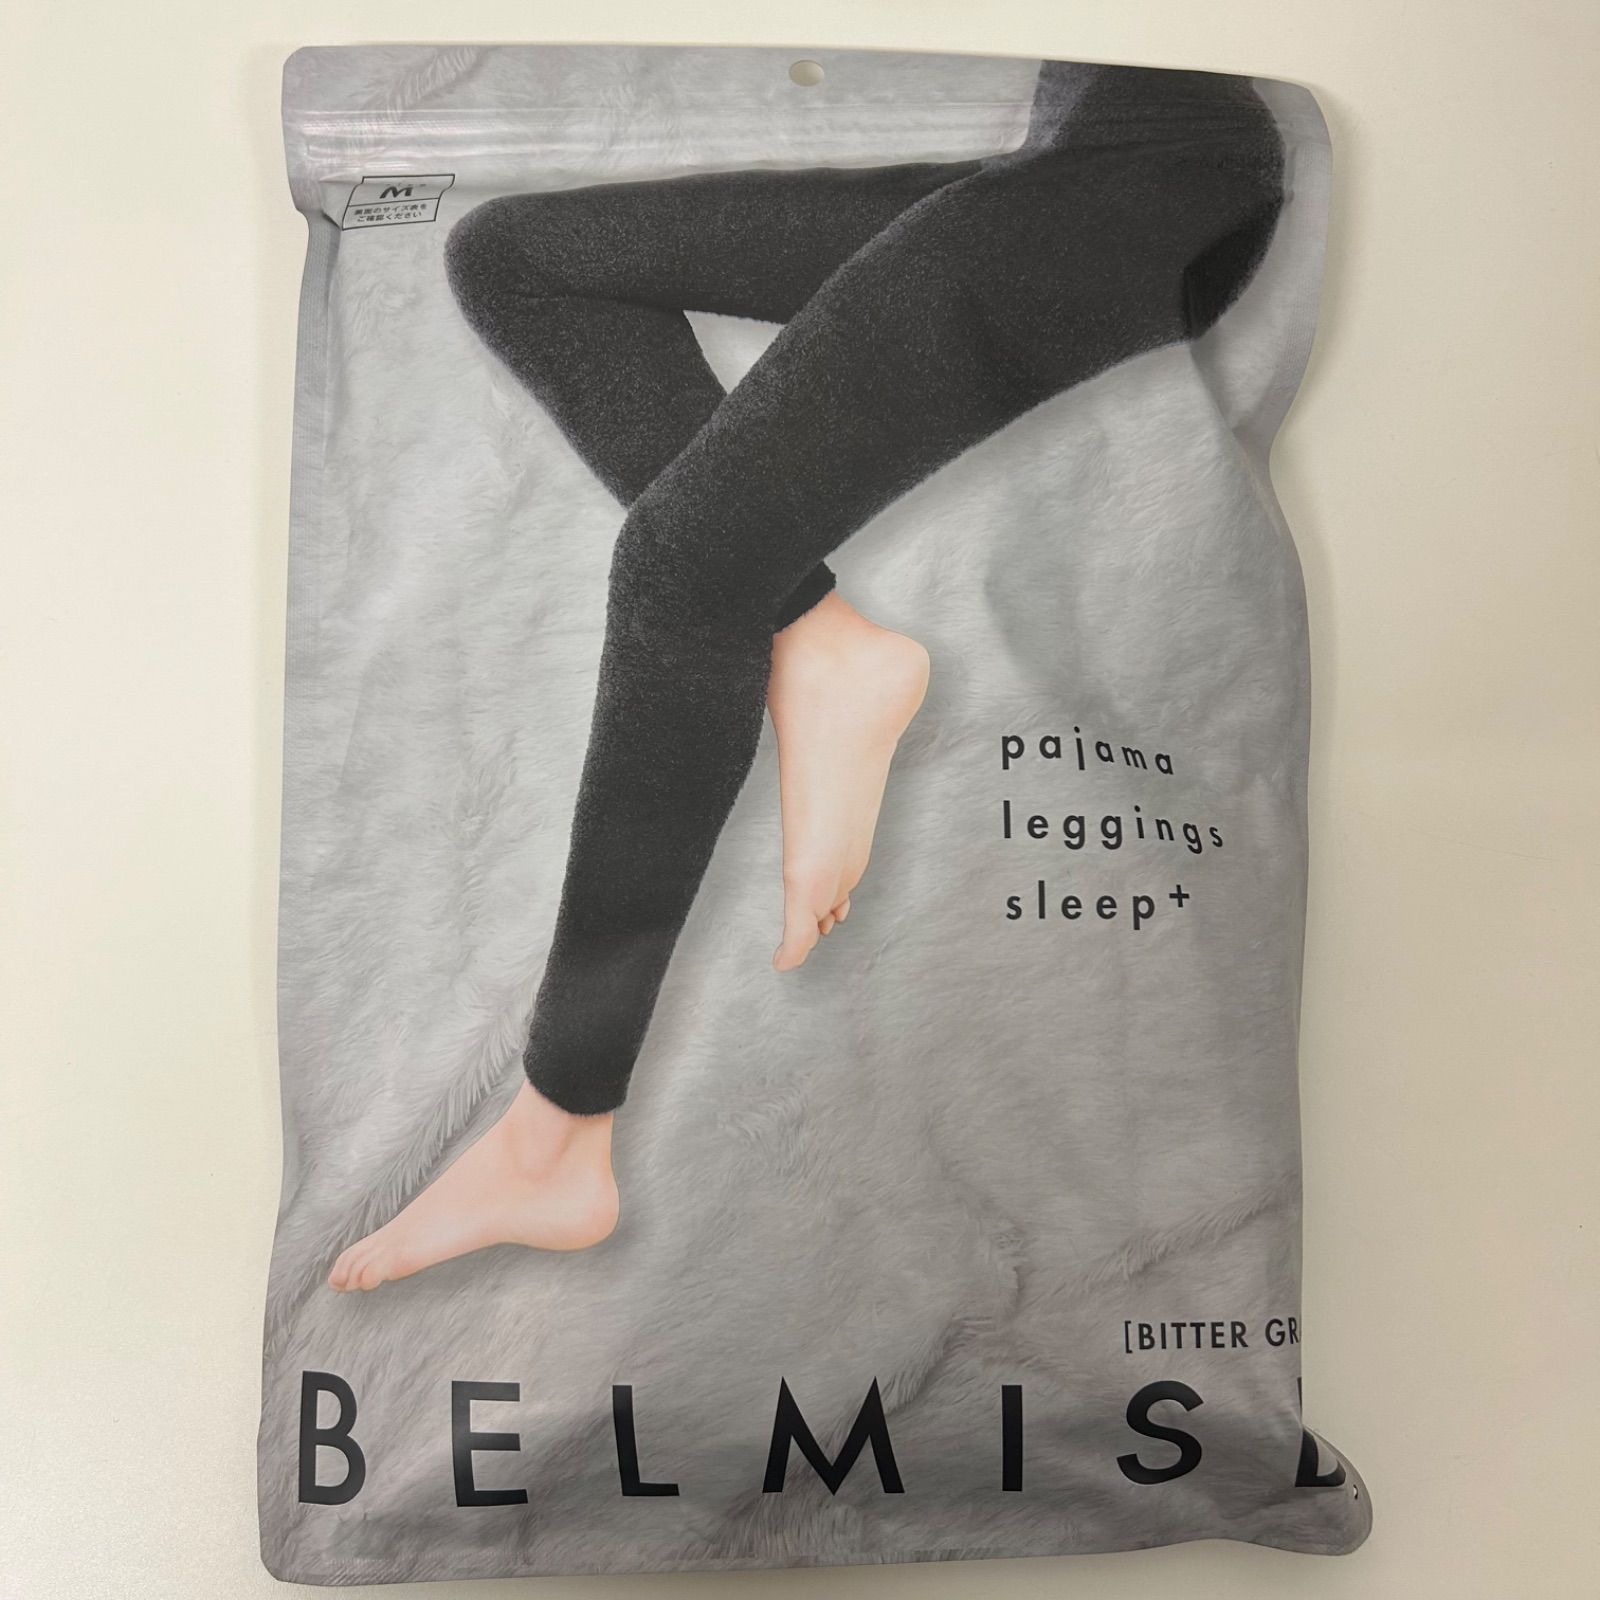 新品未開封 BELMIS pajama leggings sleep+ ベルミス パジャマレギンス